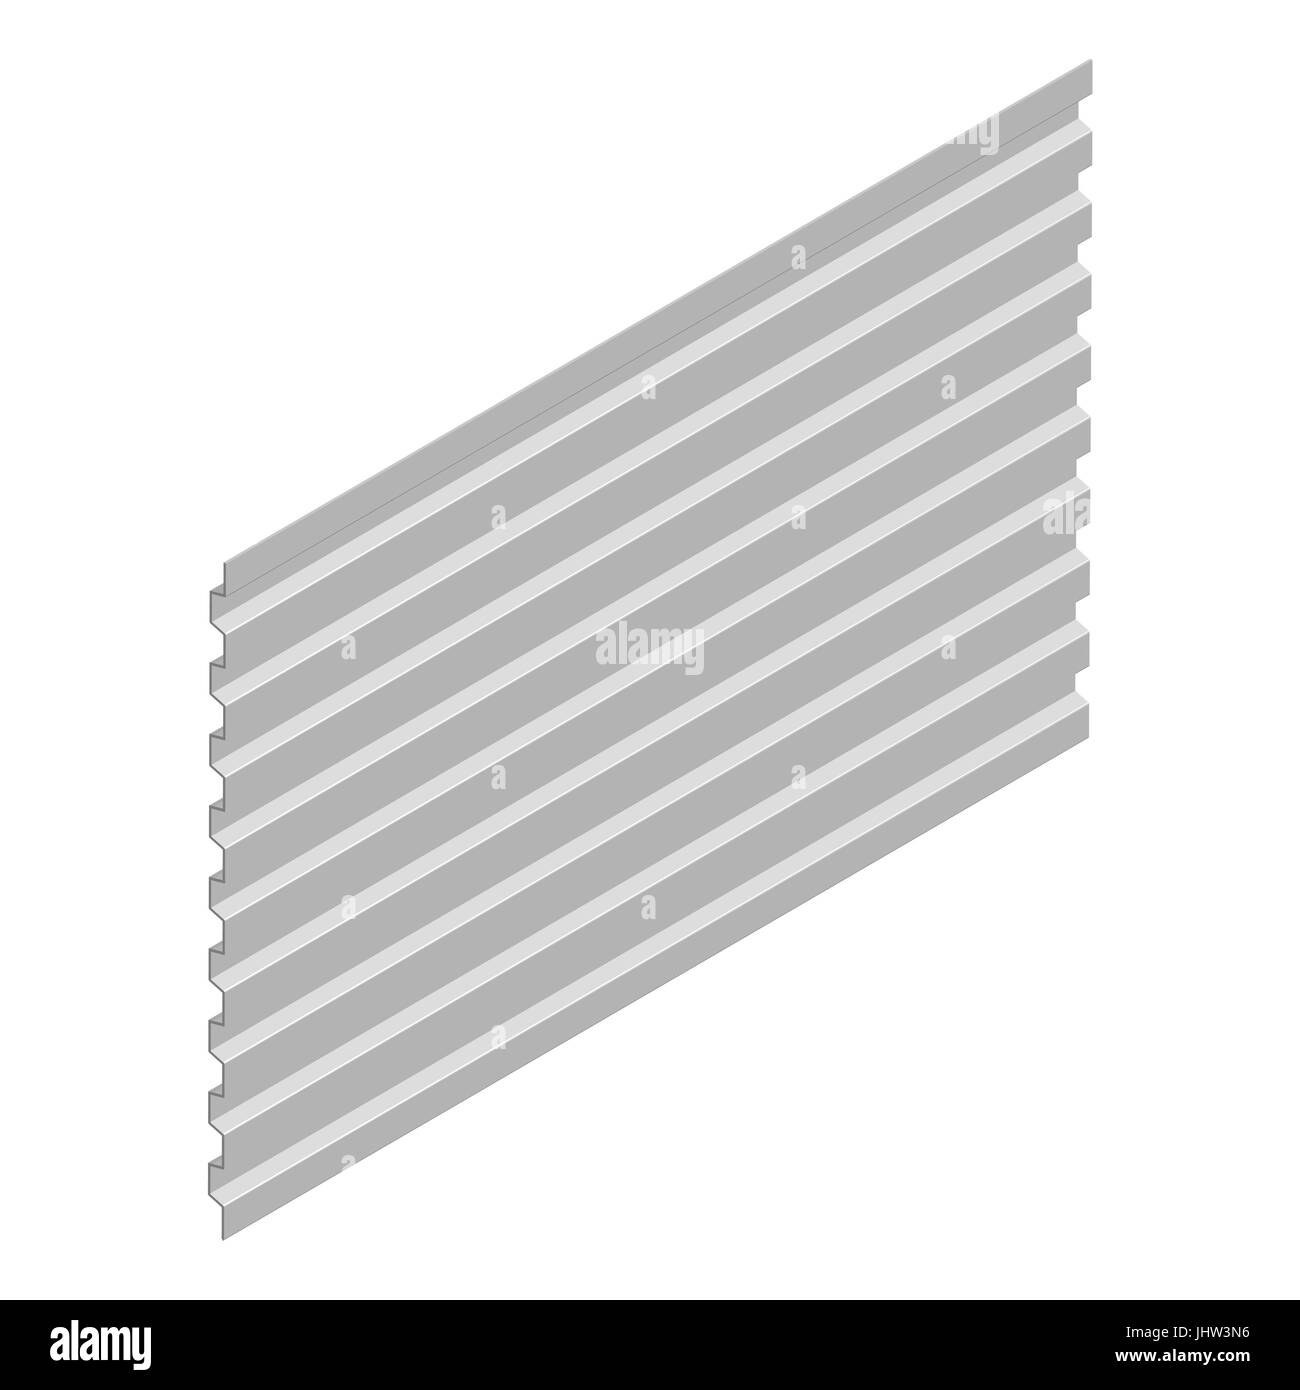 Profil de tôle d'acier, isolé sur fond blanc, disposition verticale. Élément de la conception de matériaux de construction. 3D isométrique, vector style illus Illustration de Vecteur